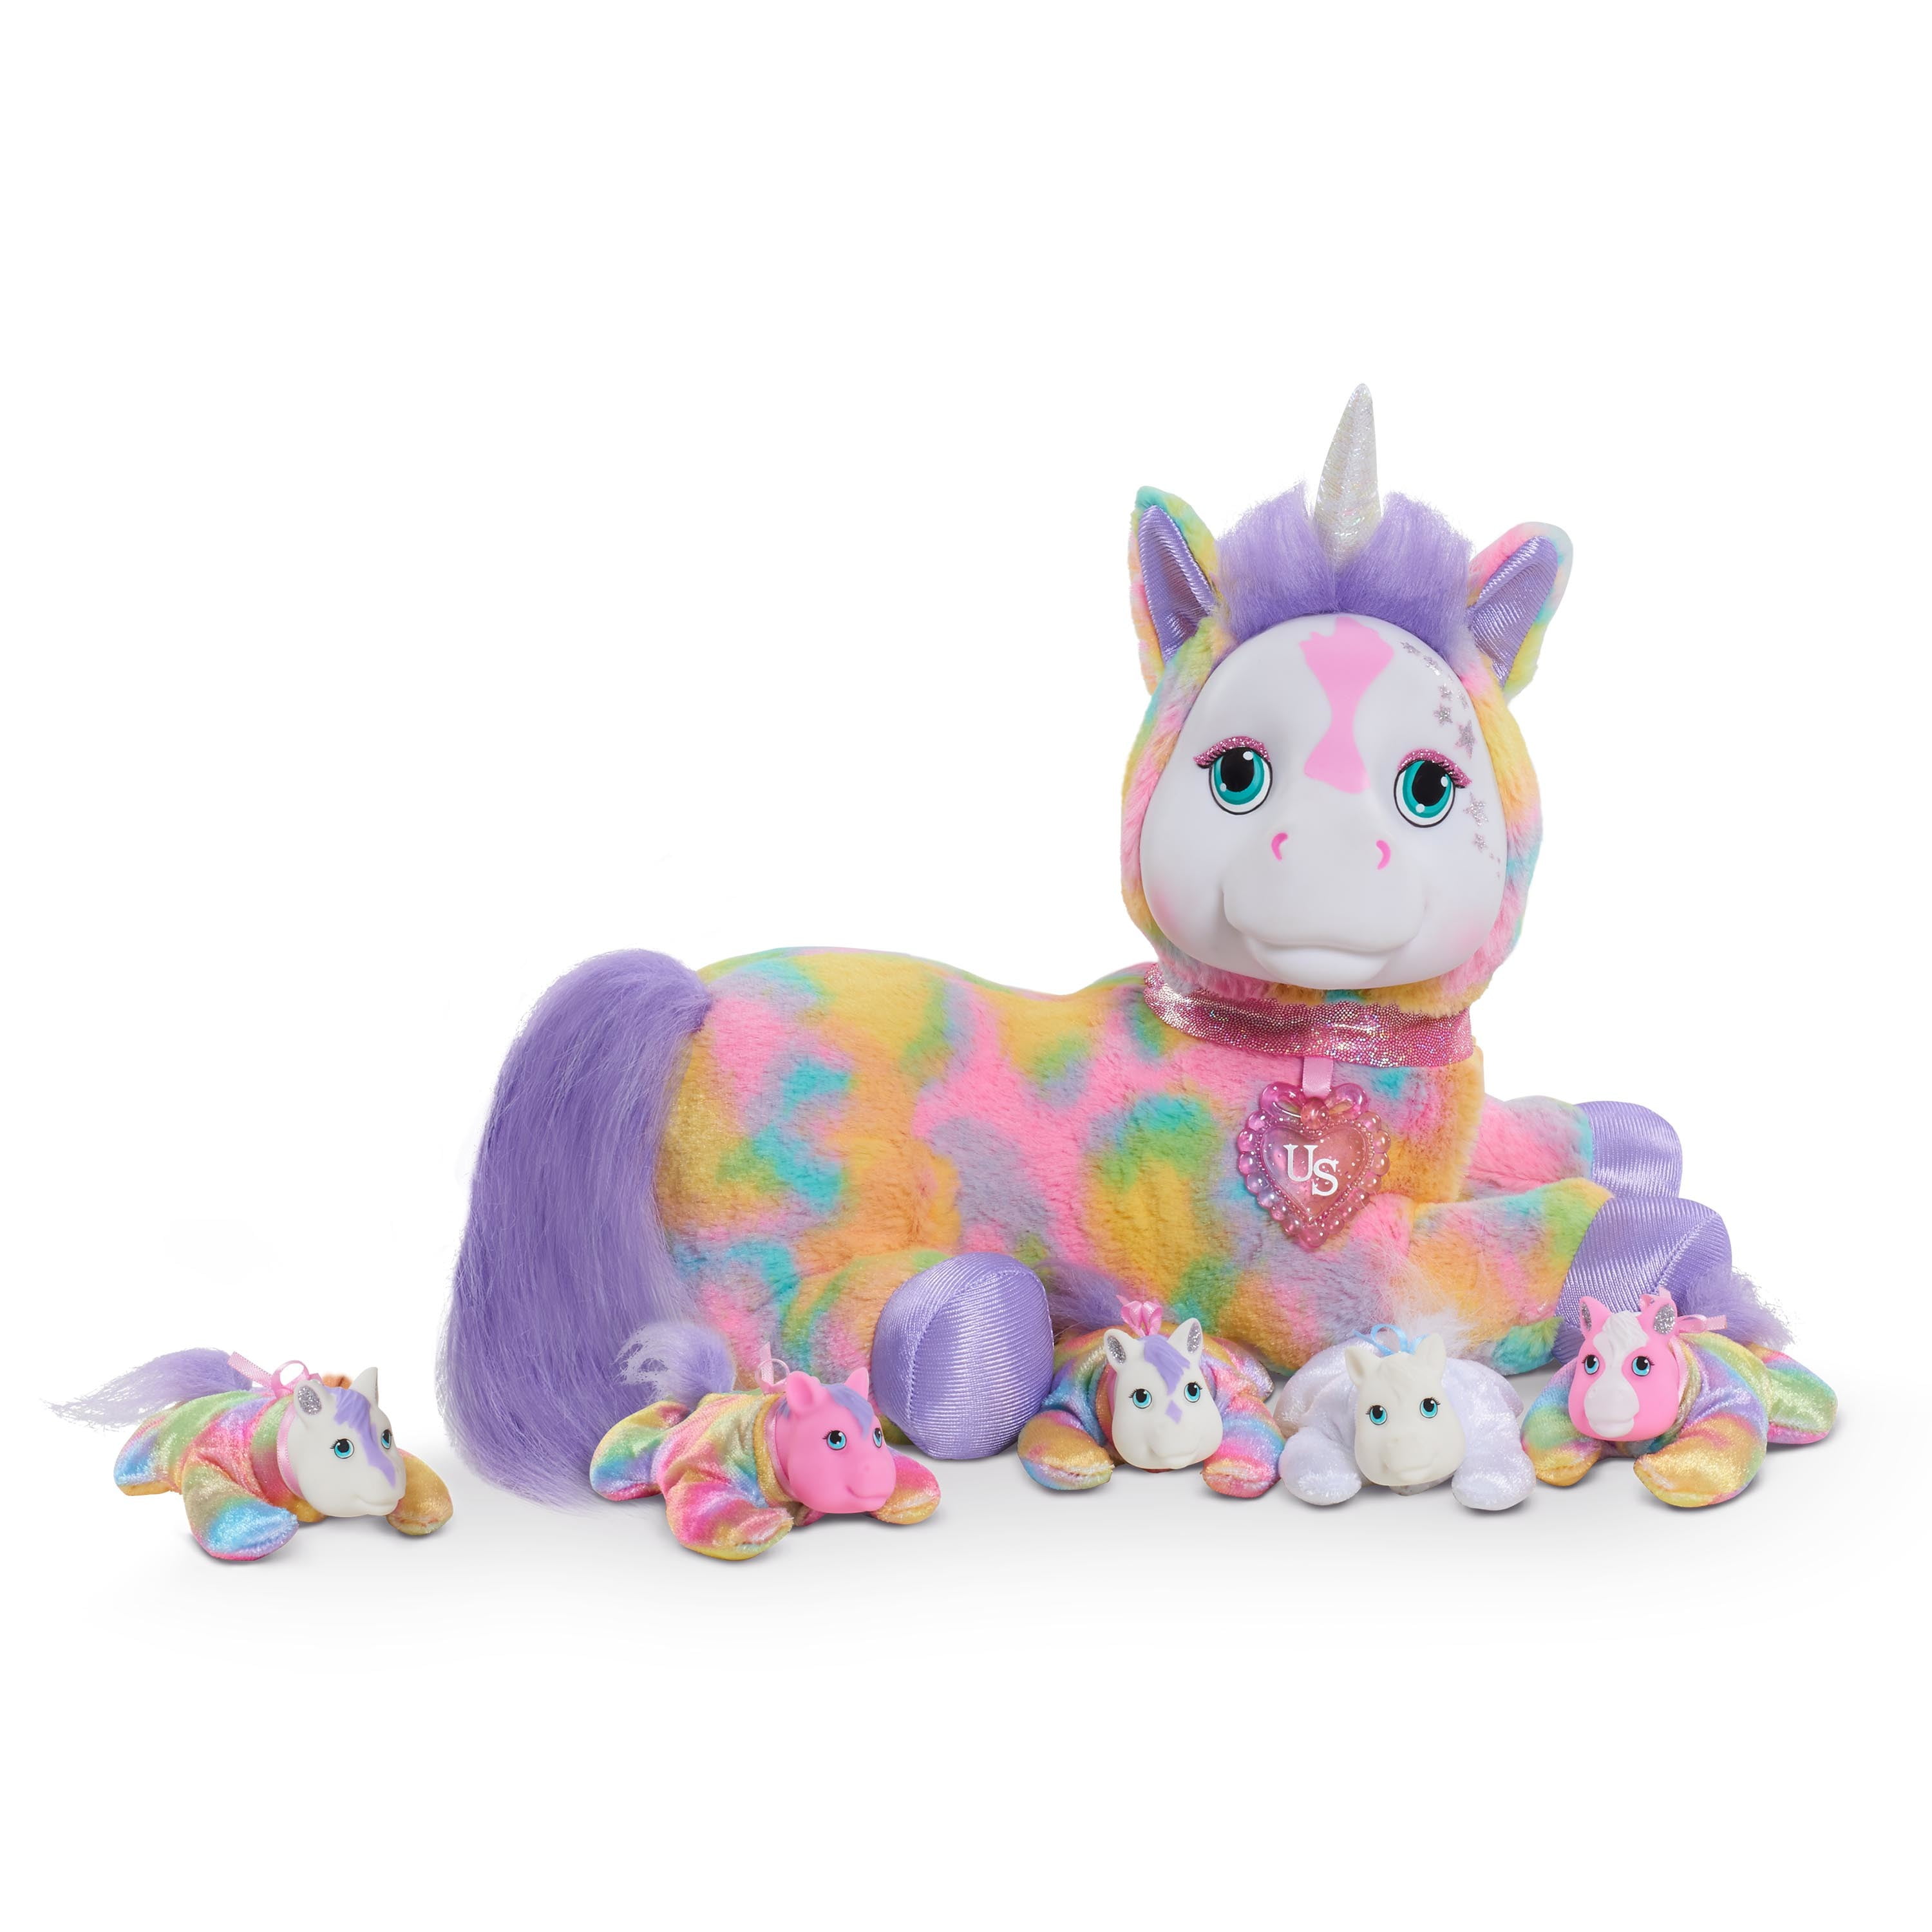 Plush Unicorn Doll Toy Animal Stuffed Soft Kids Toys Horse Jumbo Gift Baby New 